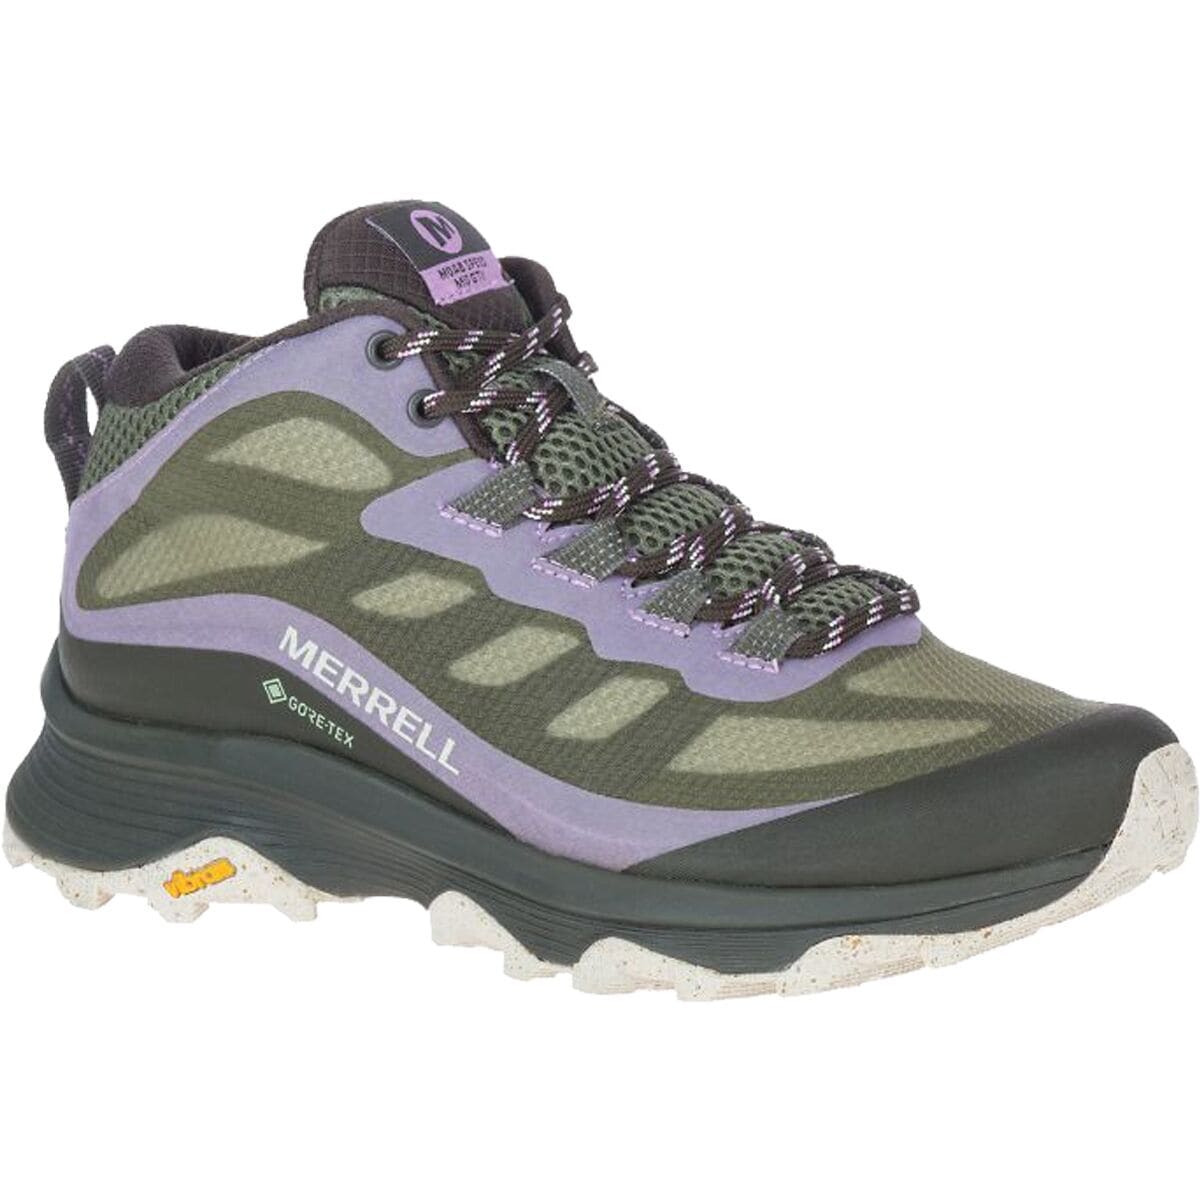 Merrell Moab Speed Mid GORE-TEX Hiking Shoe - Women's - Footwear